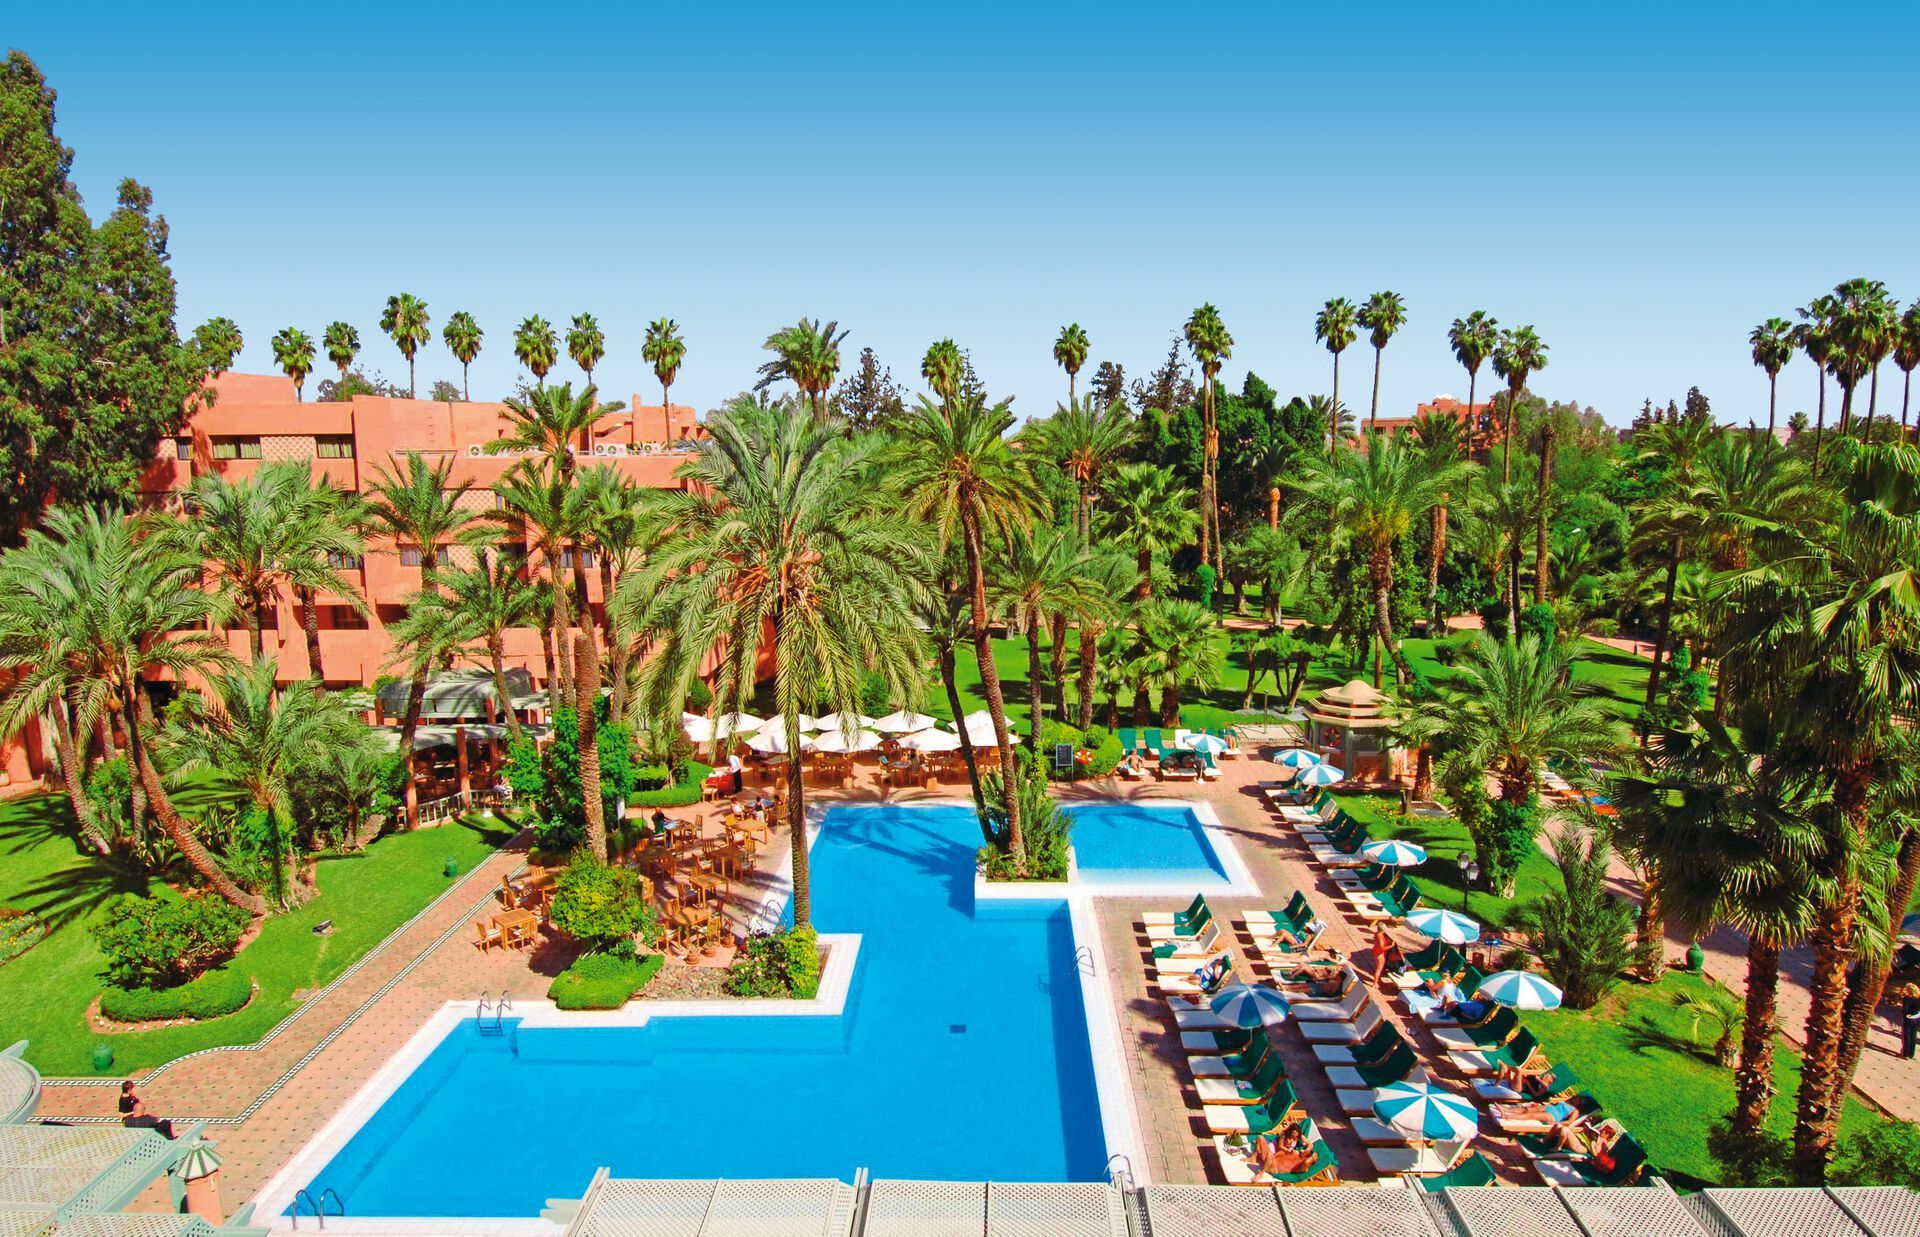 Maroc - Marrakech - Hotel Kenzi Rose Garden 5*